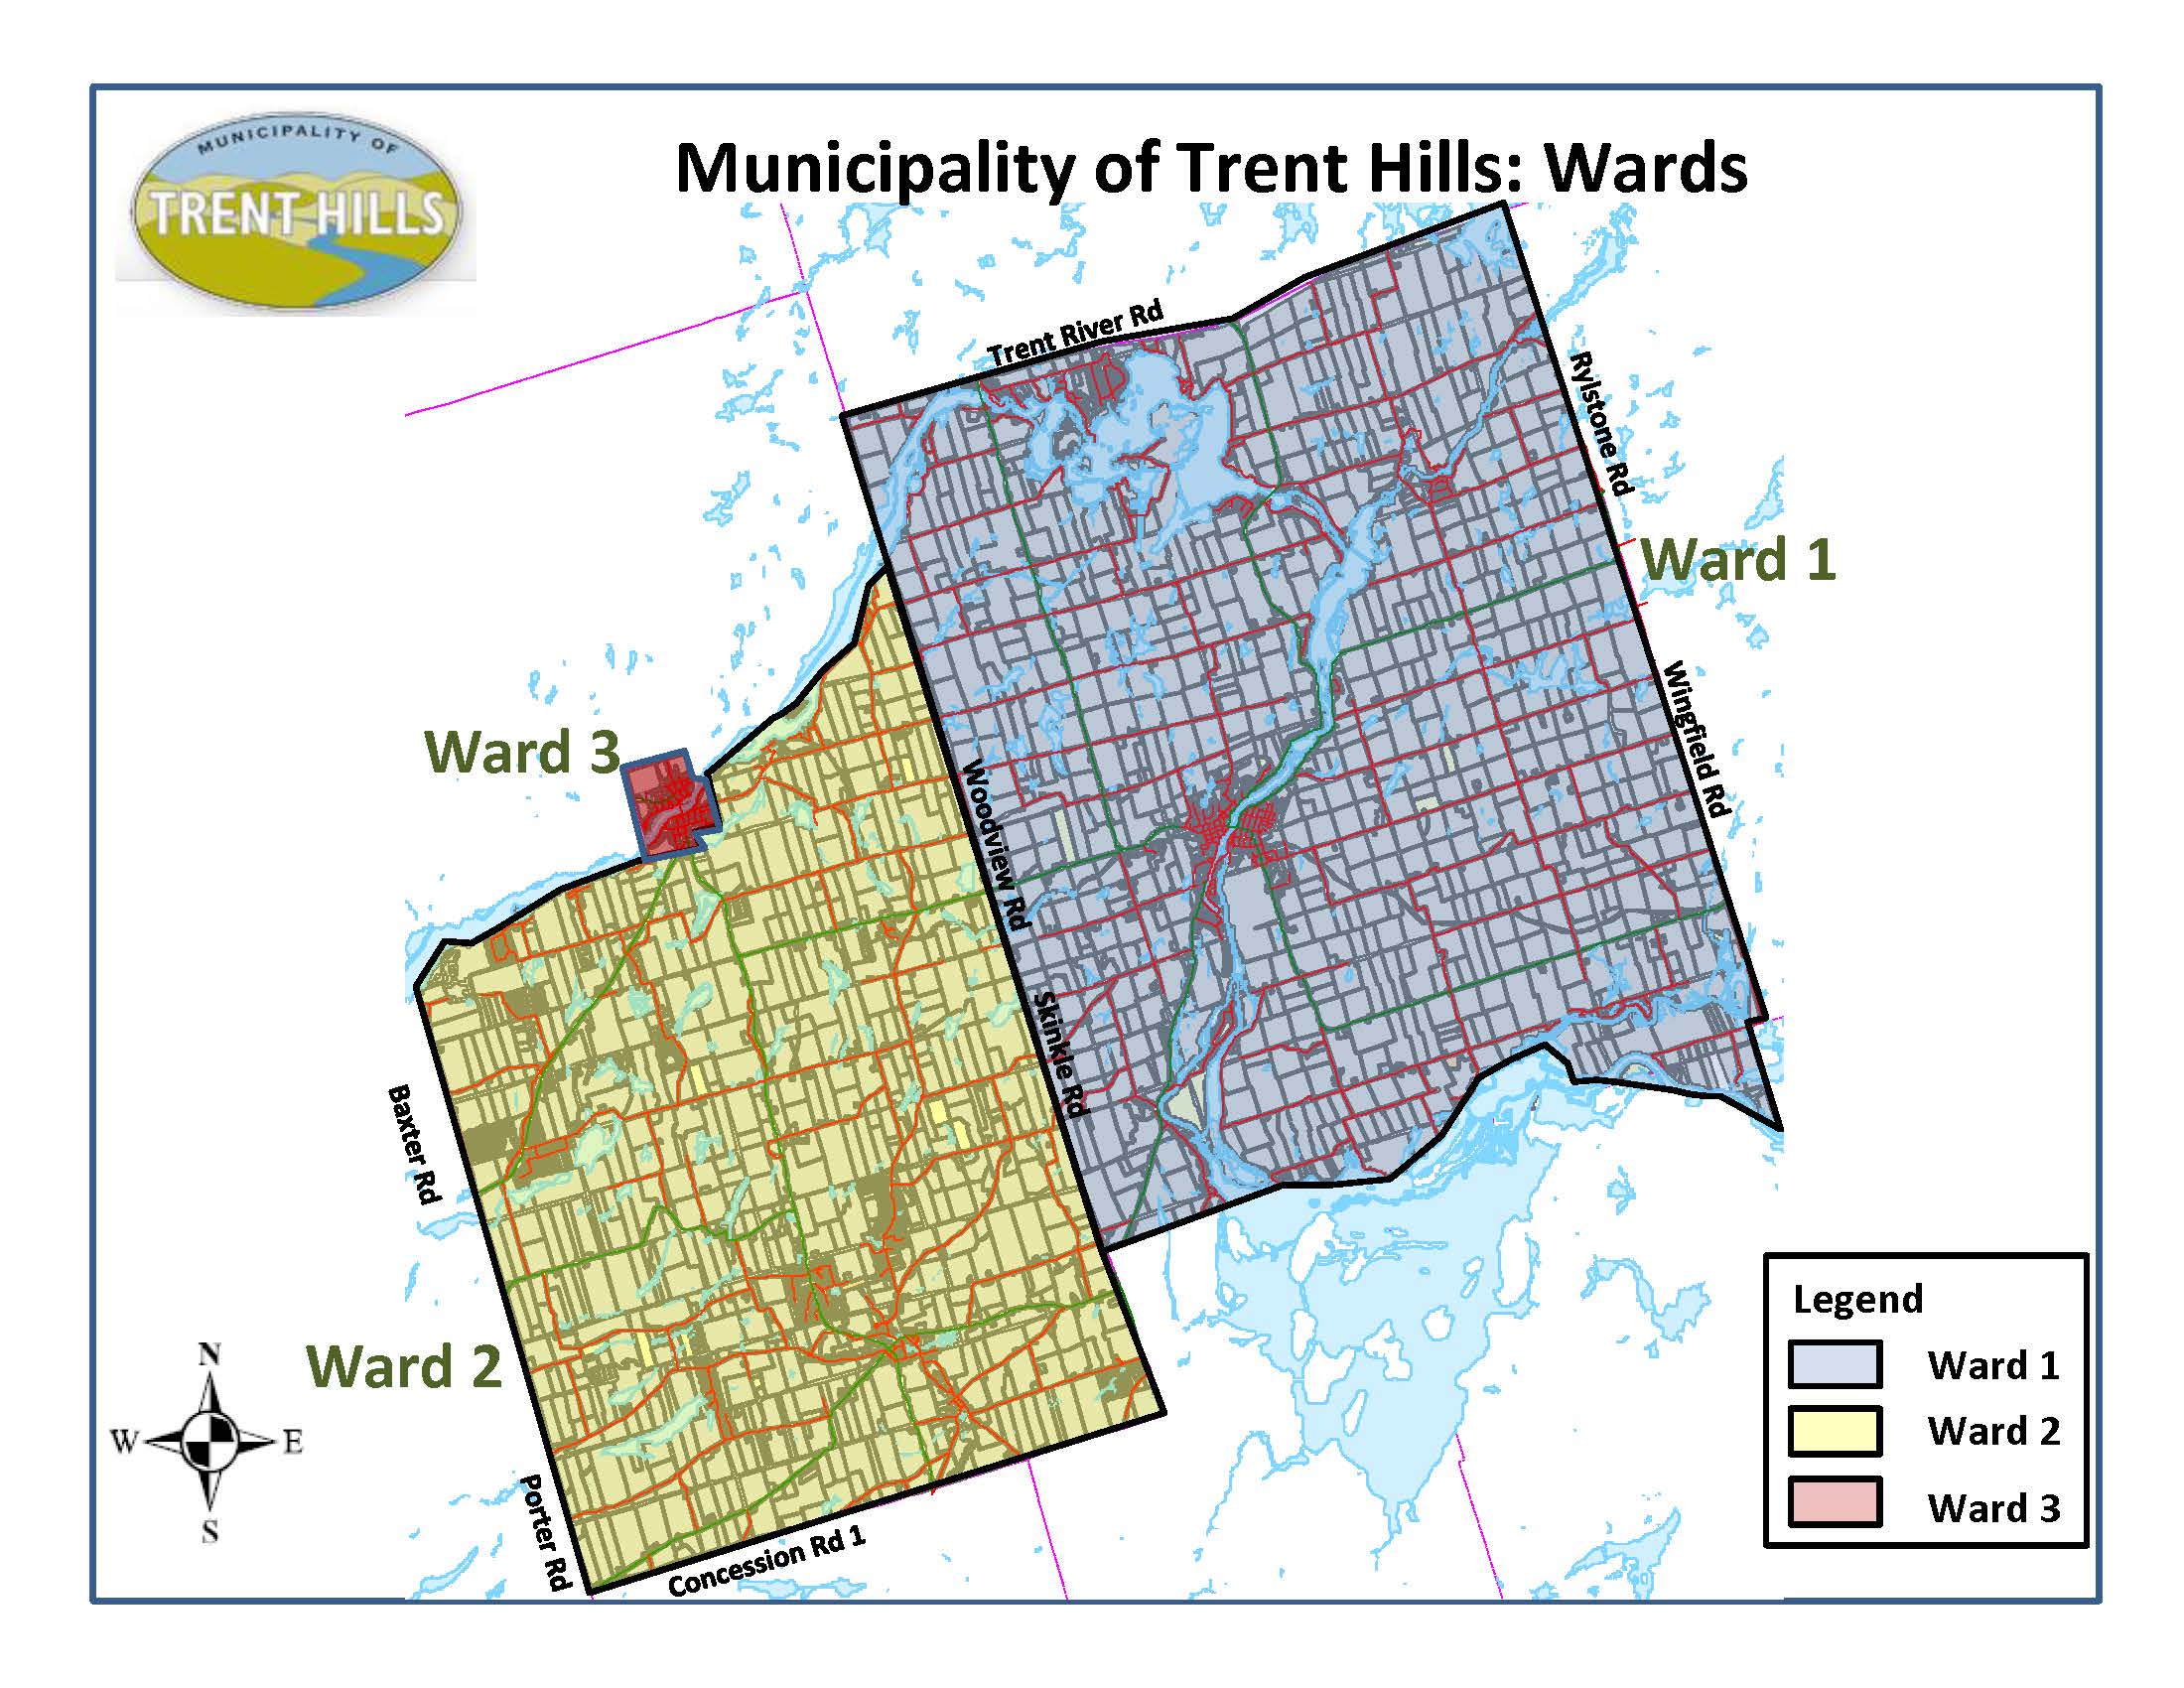 Current Ward Boundaries for Trent Hills